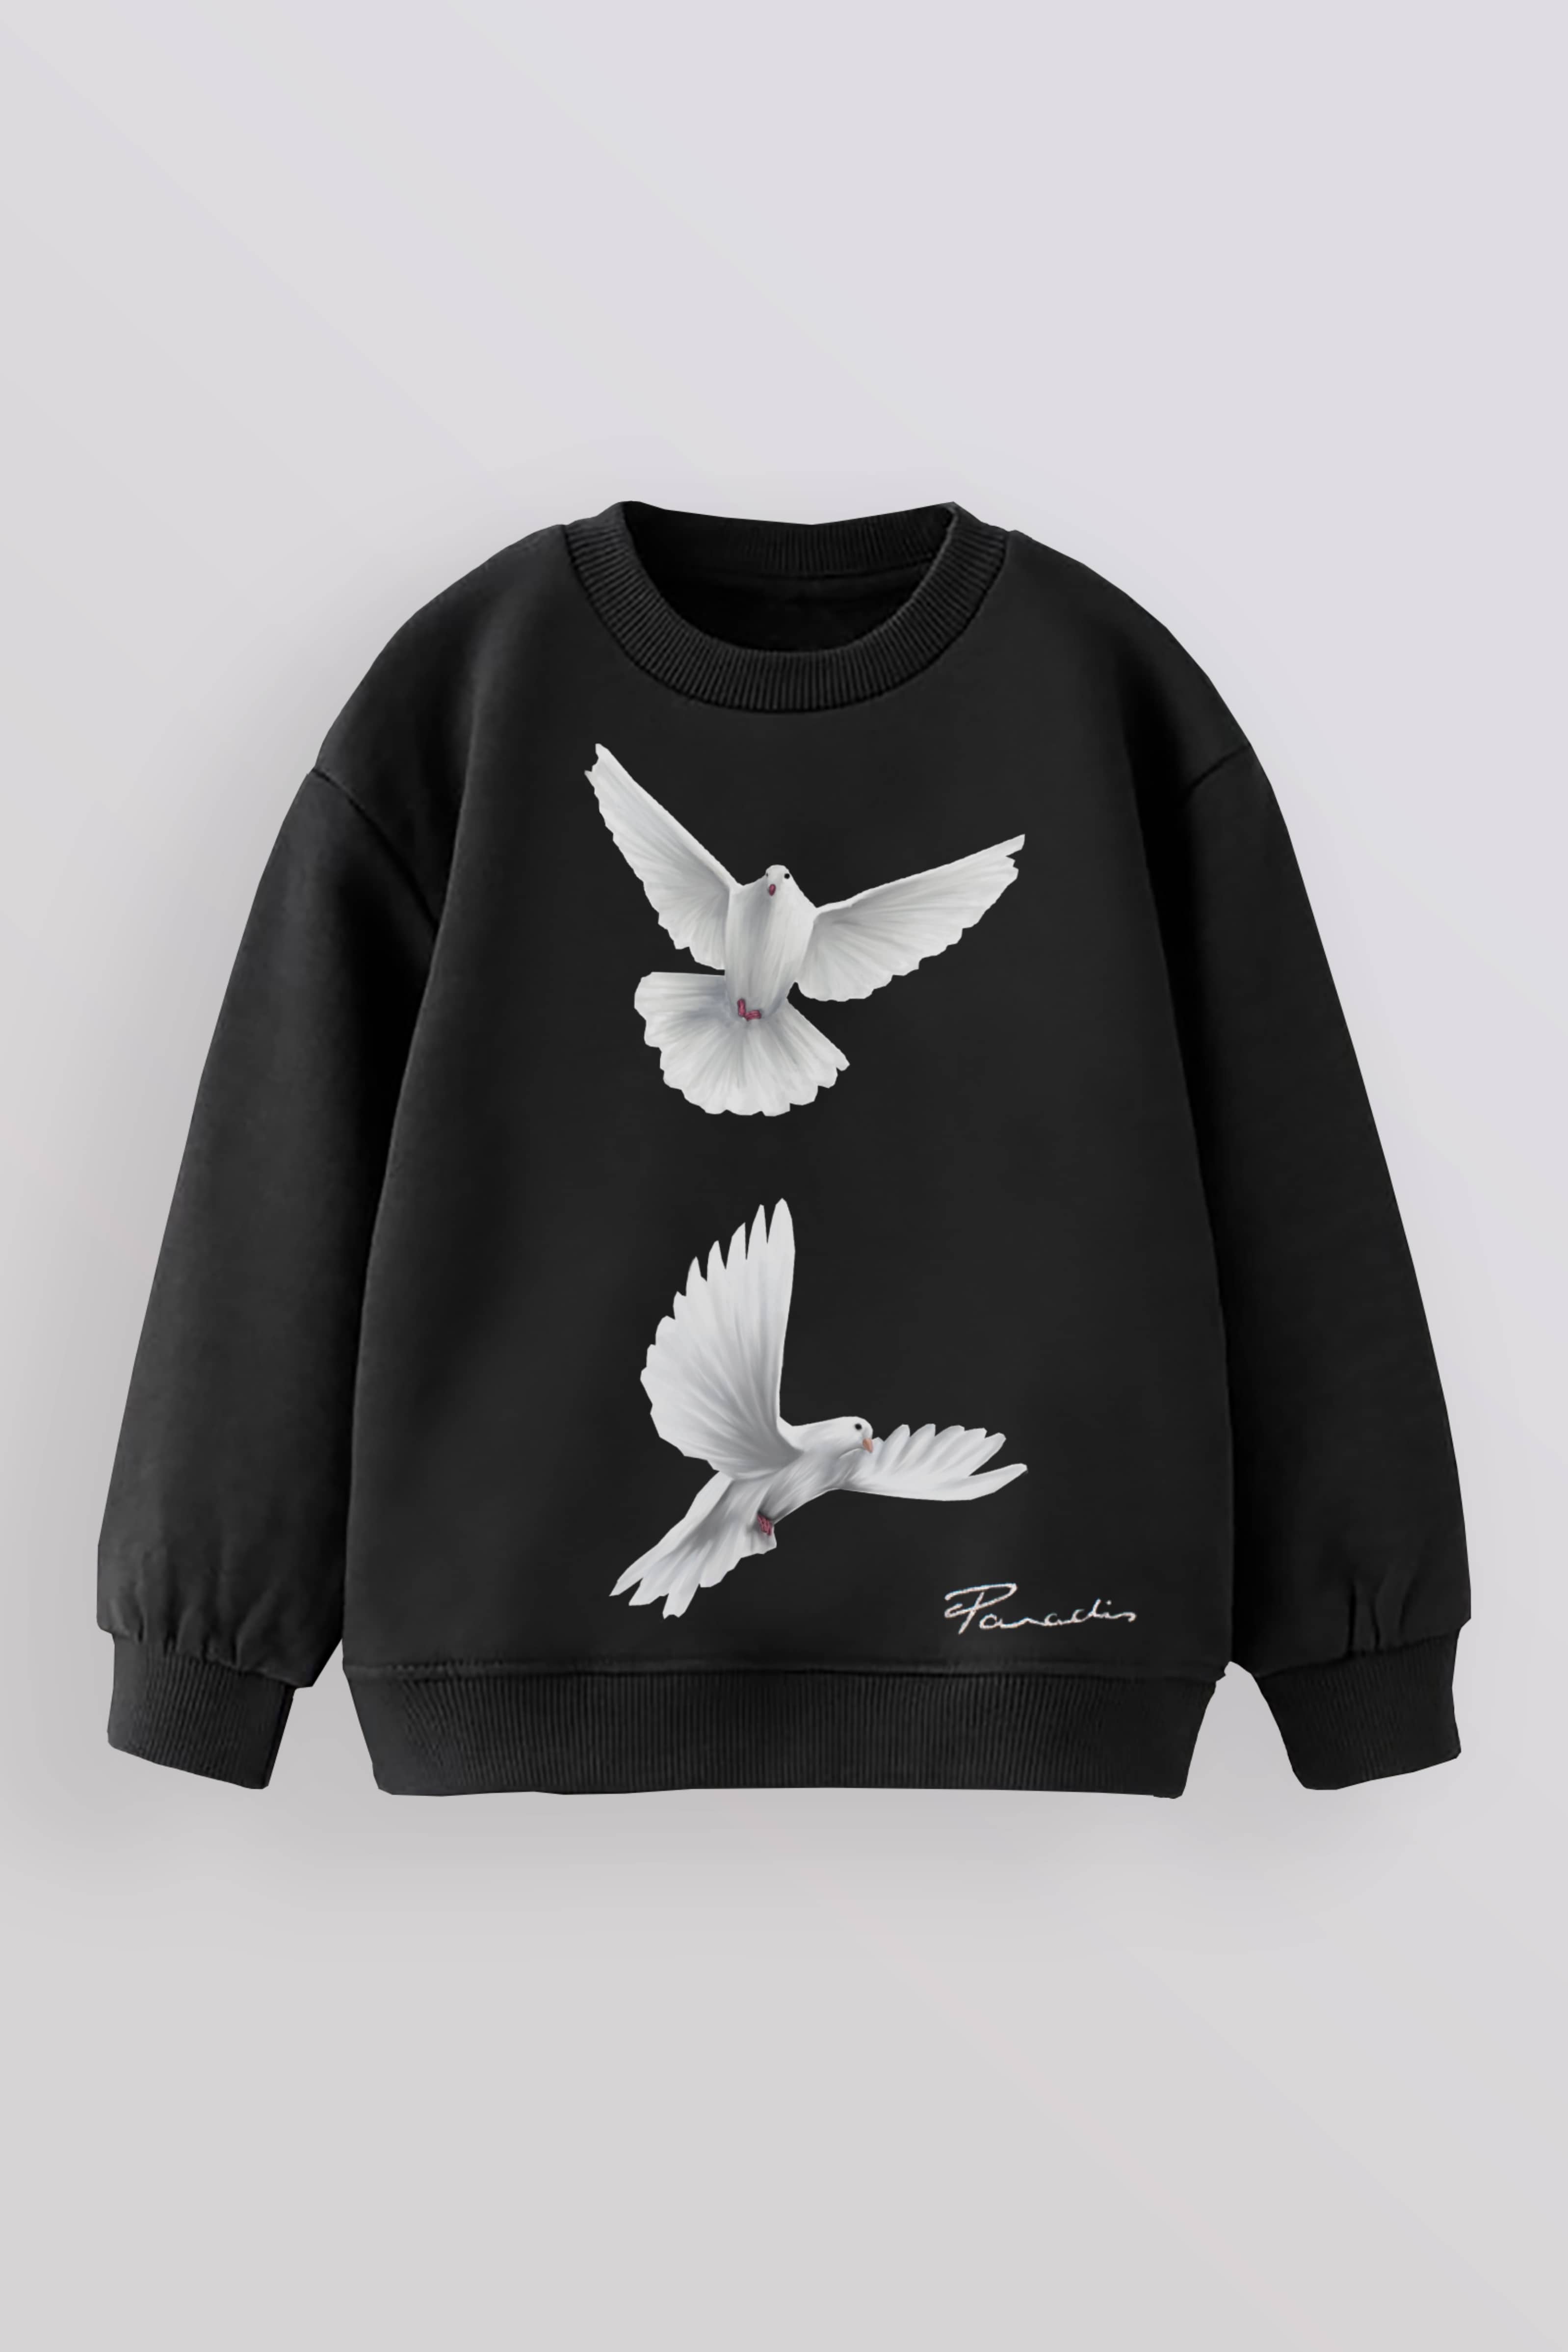 Freedom Doves Children Sweater